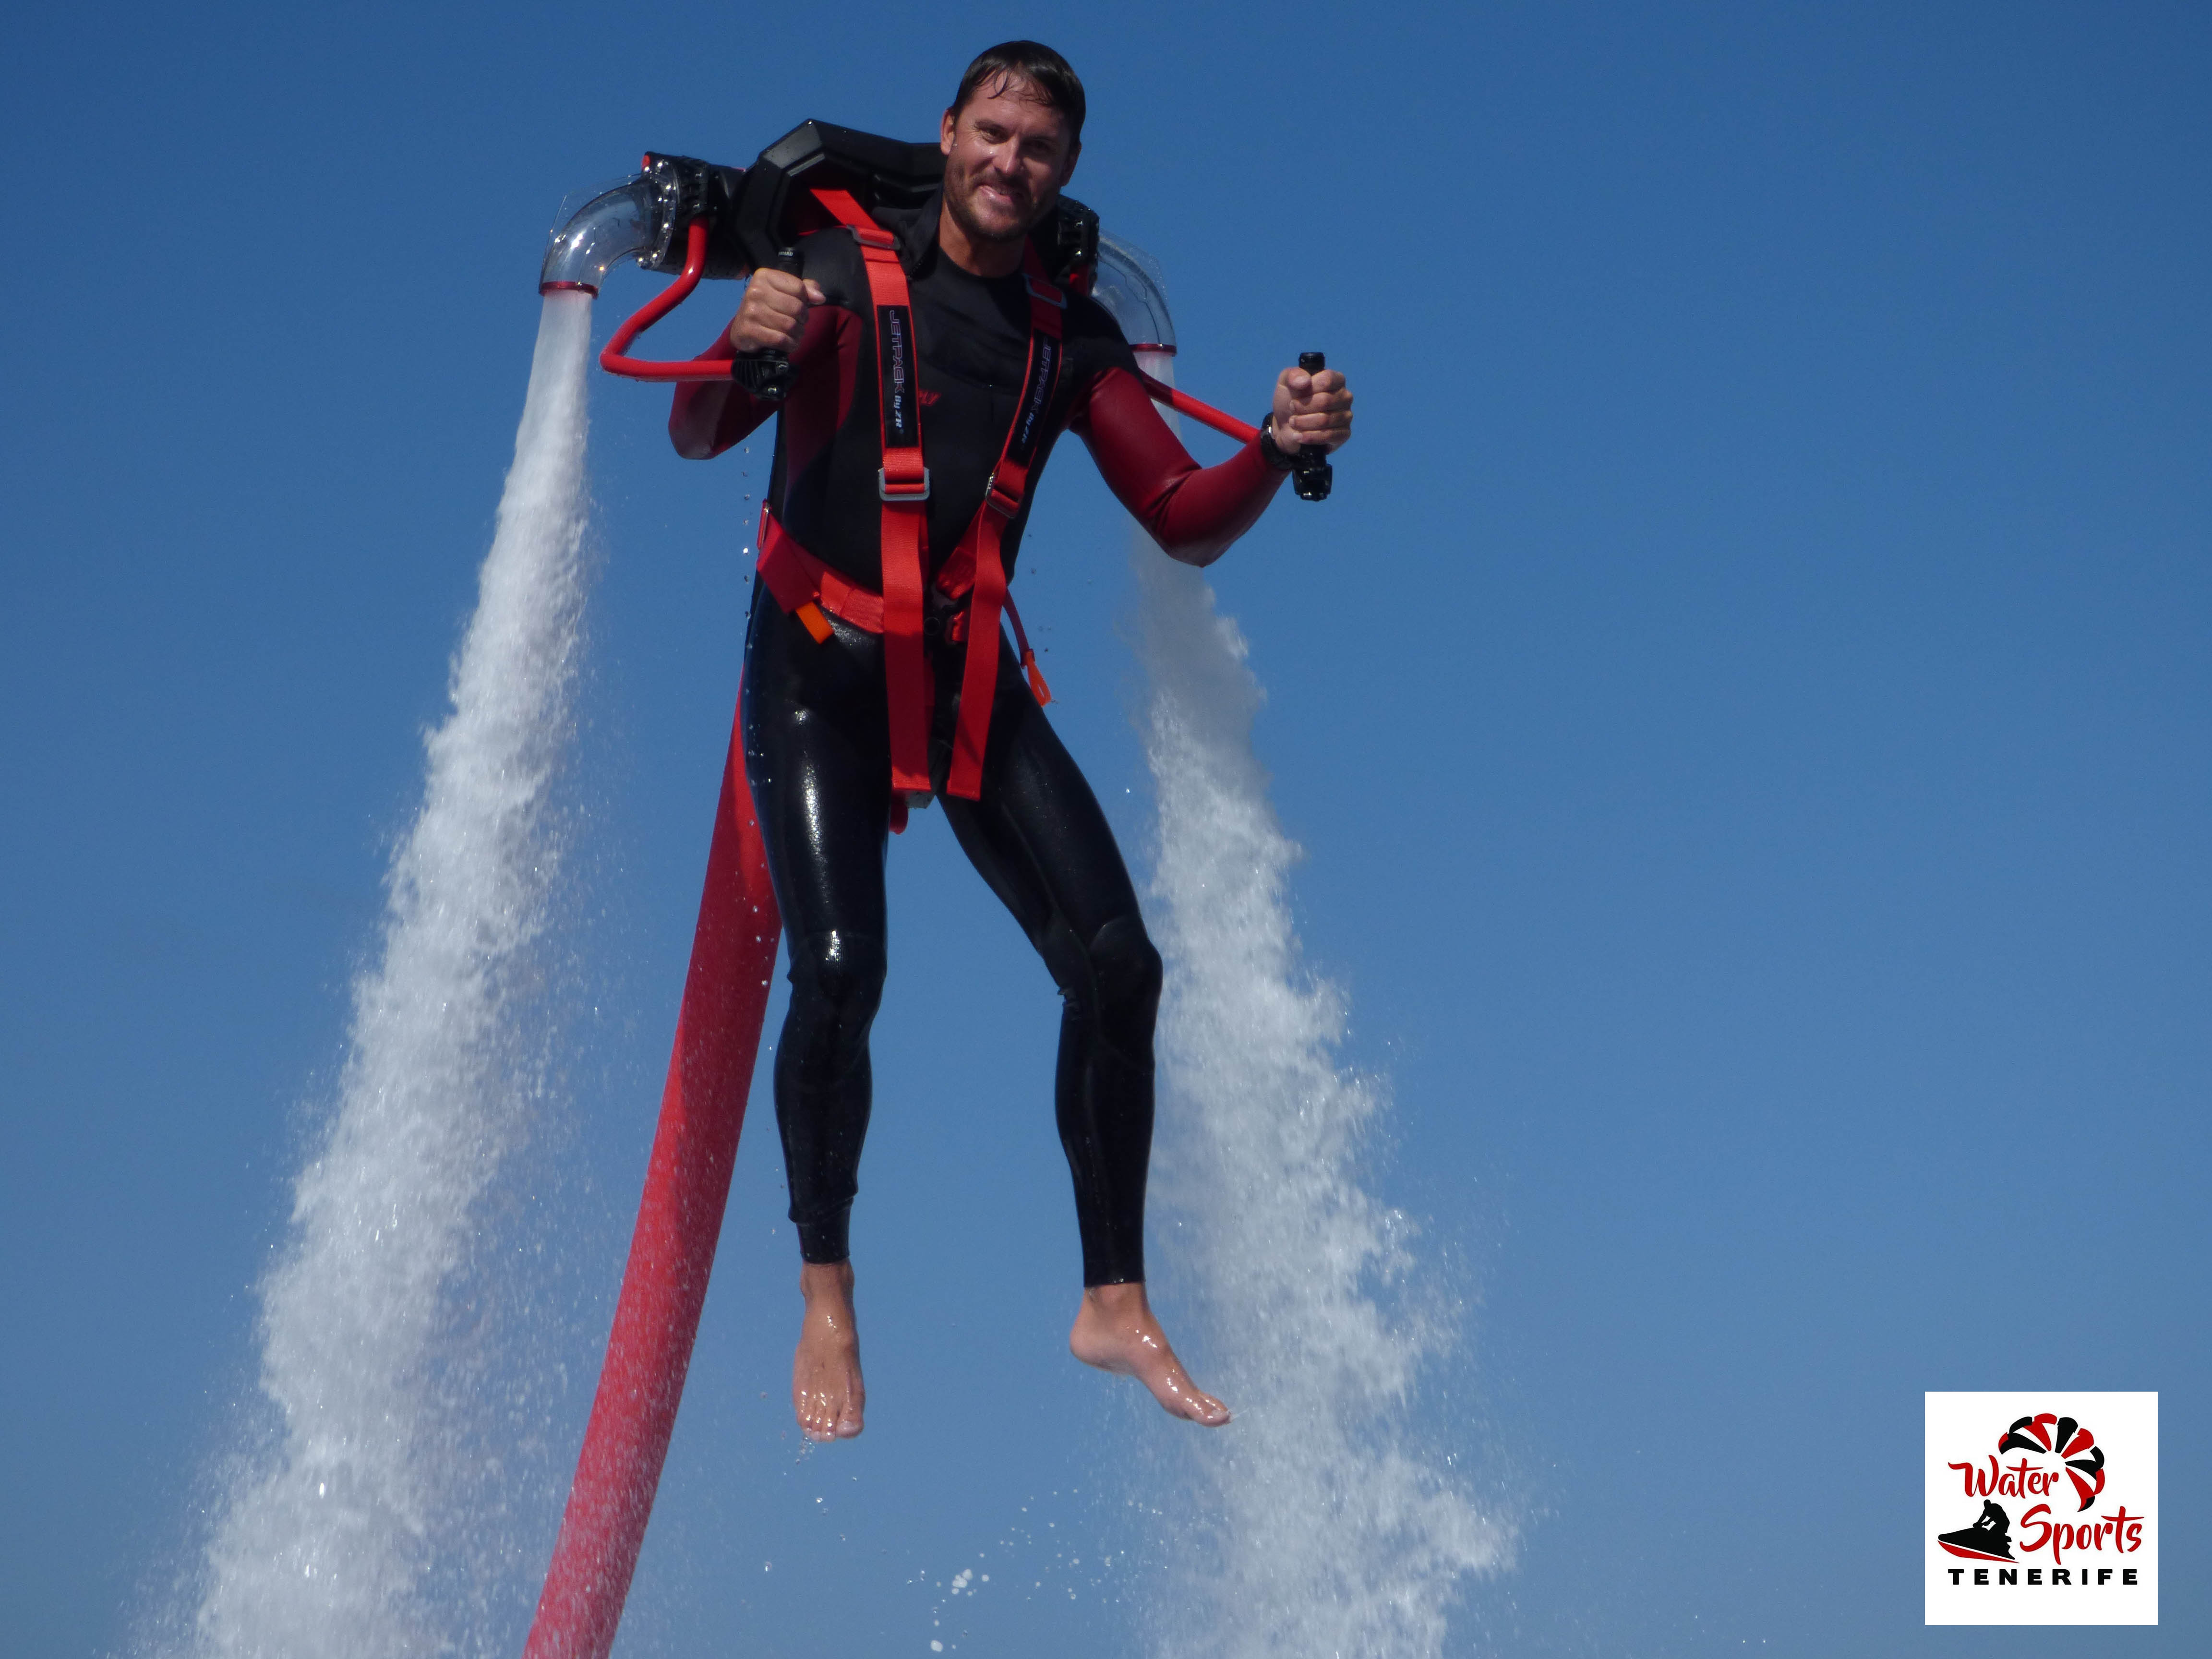 flyboard water sports in fañabe in el medano tenerife water sports